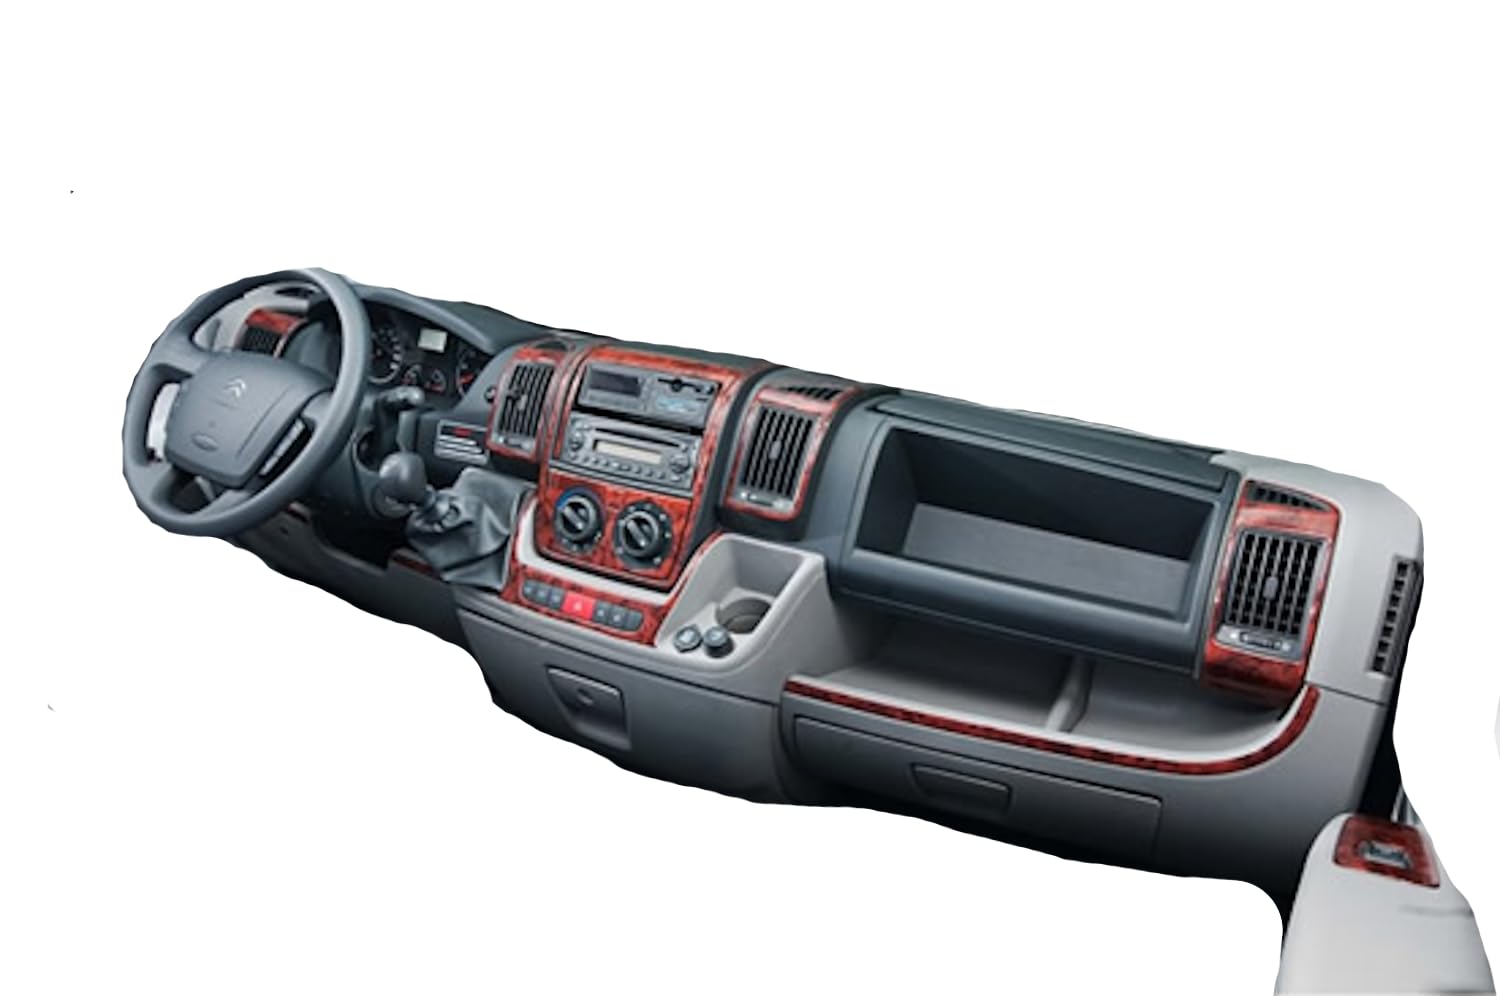 AUTOKLEIDUNG® Cockpit Dekor kompatibel mit Fiat Ducato ab Baujahr 02/2006 22 Teile | 3D Carbon Dark Optik von Autokleidung